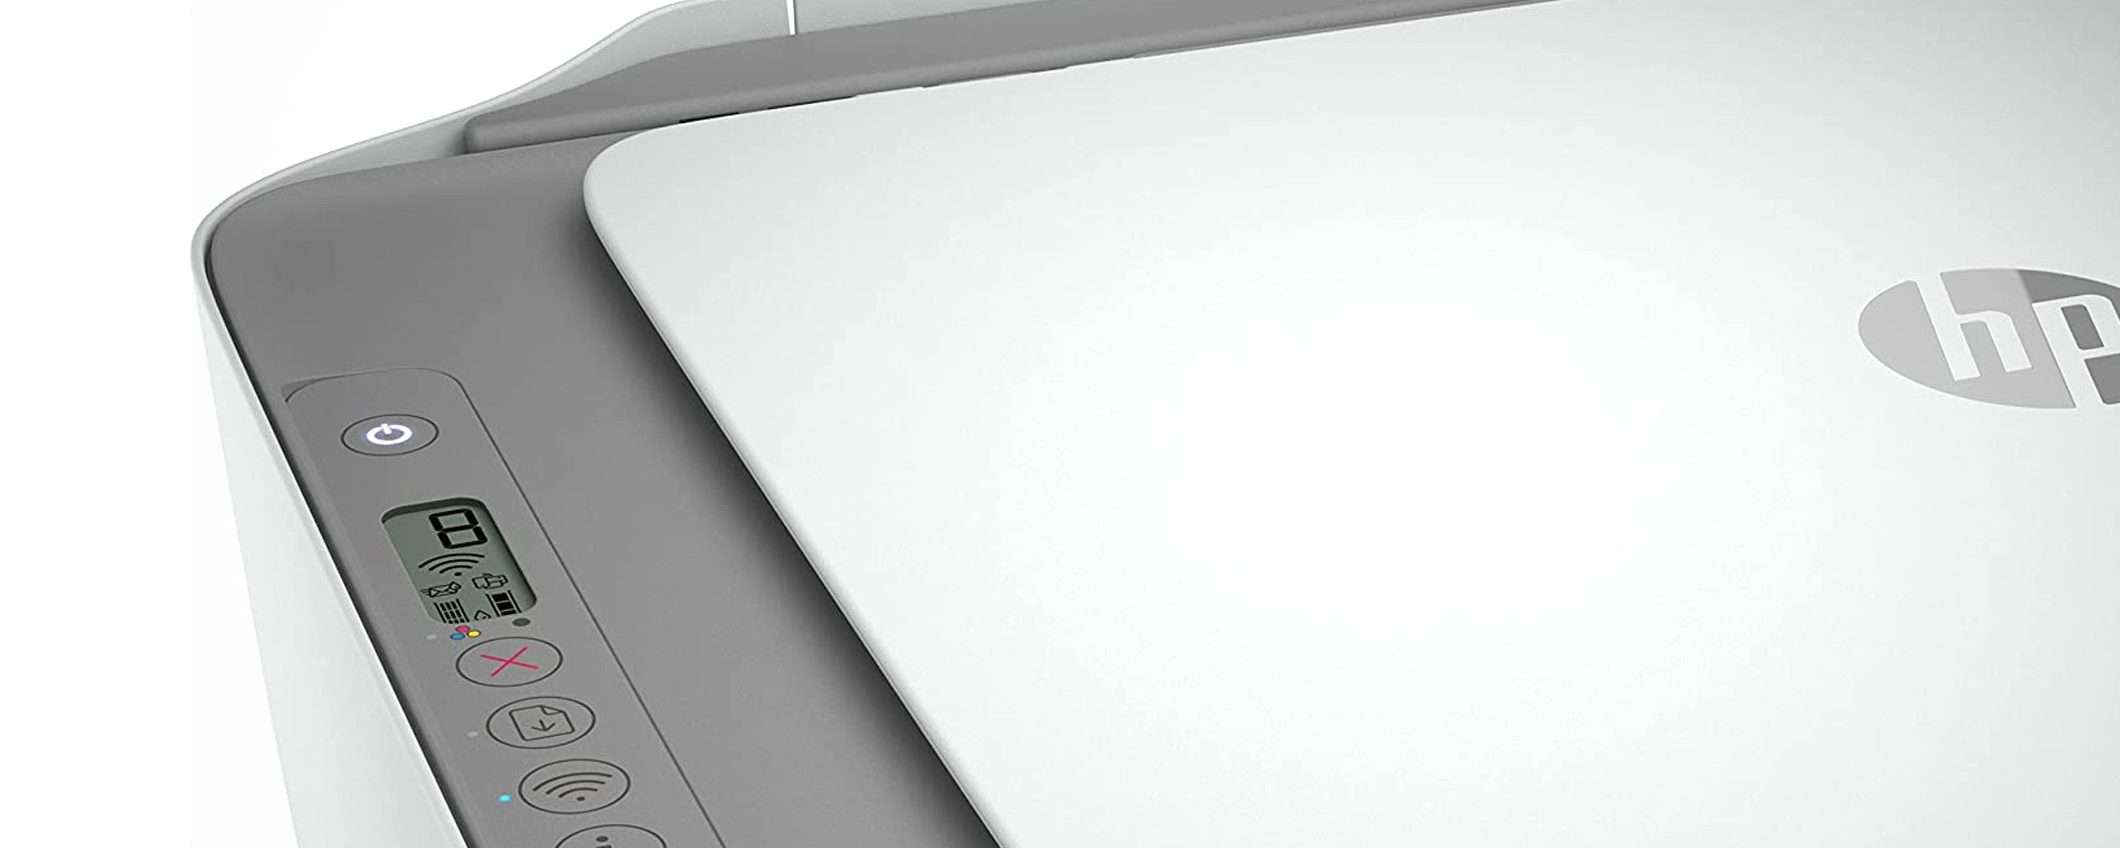 La stampante HP DeskJet 2720e a 45€ è già sulla tua scrivania